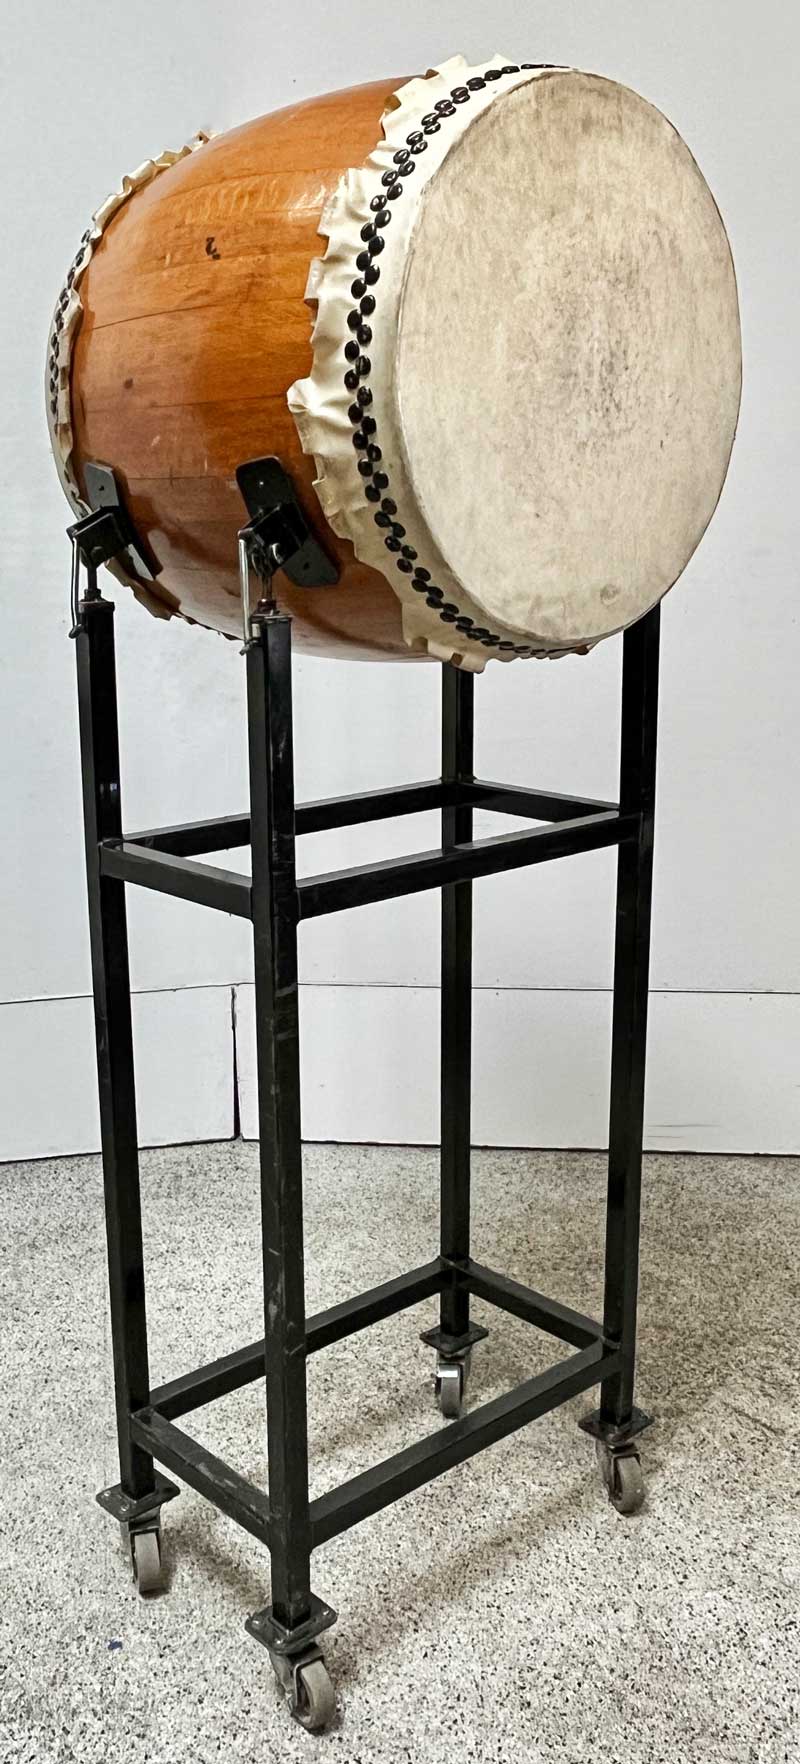 Taiko Drum, Natural Oak Finish